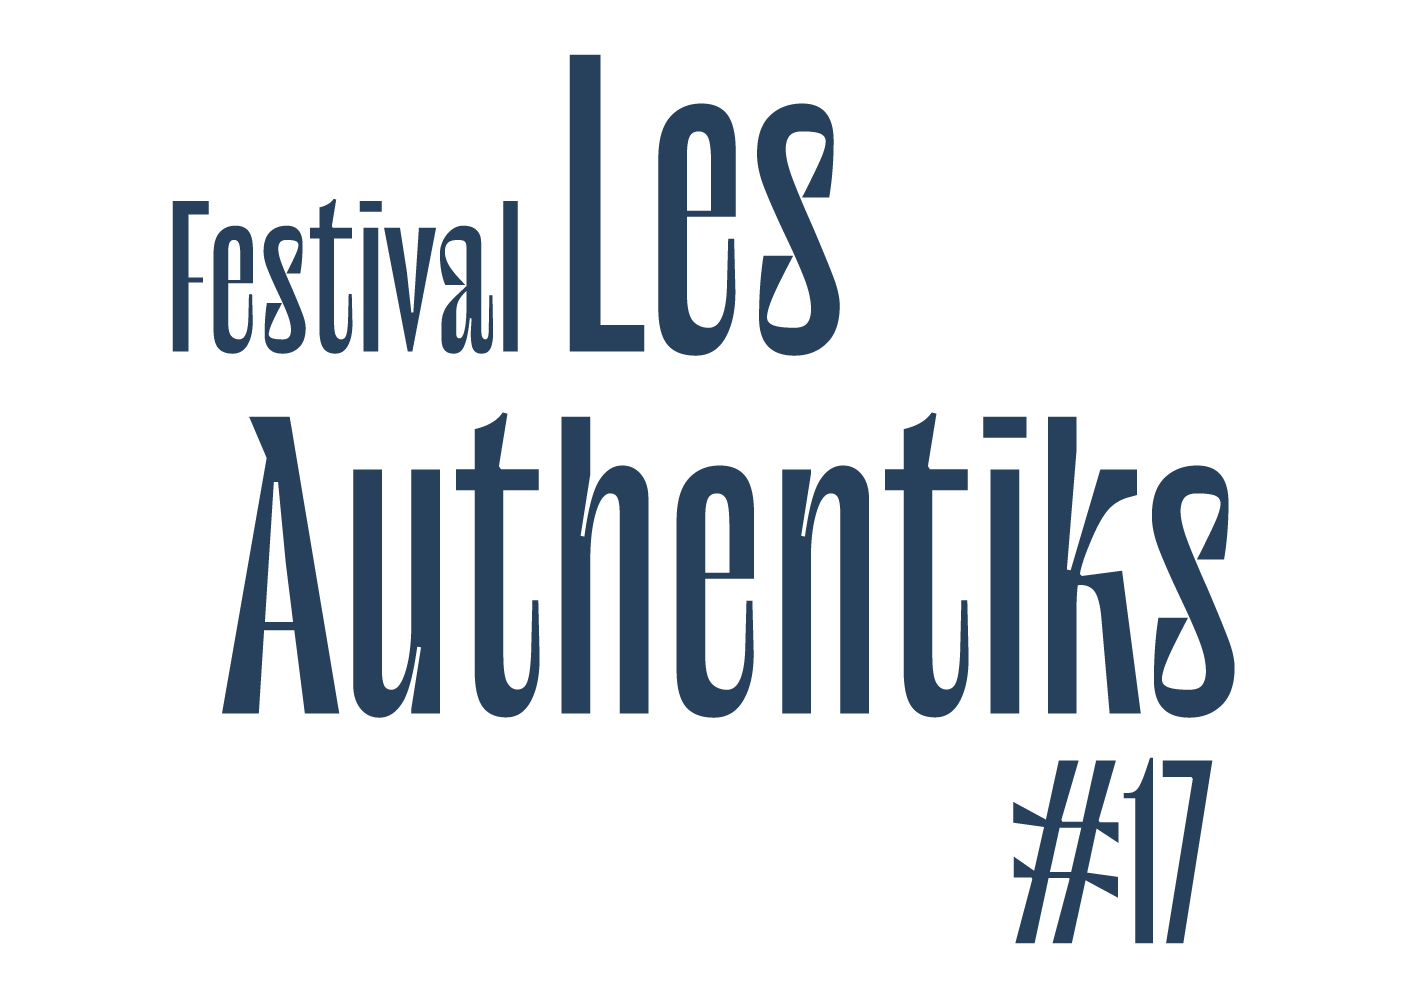 Festival Authentiks de Vienne 2021 les 13 et 15 juillet au theatre antique de vienne